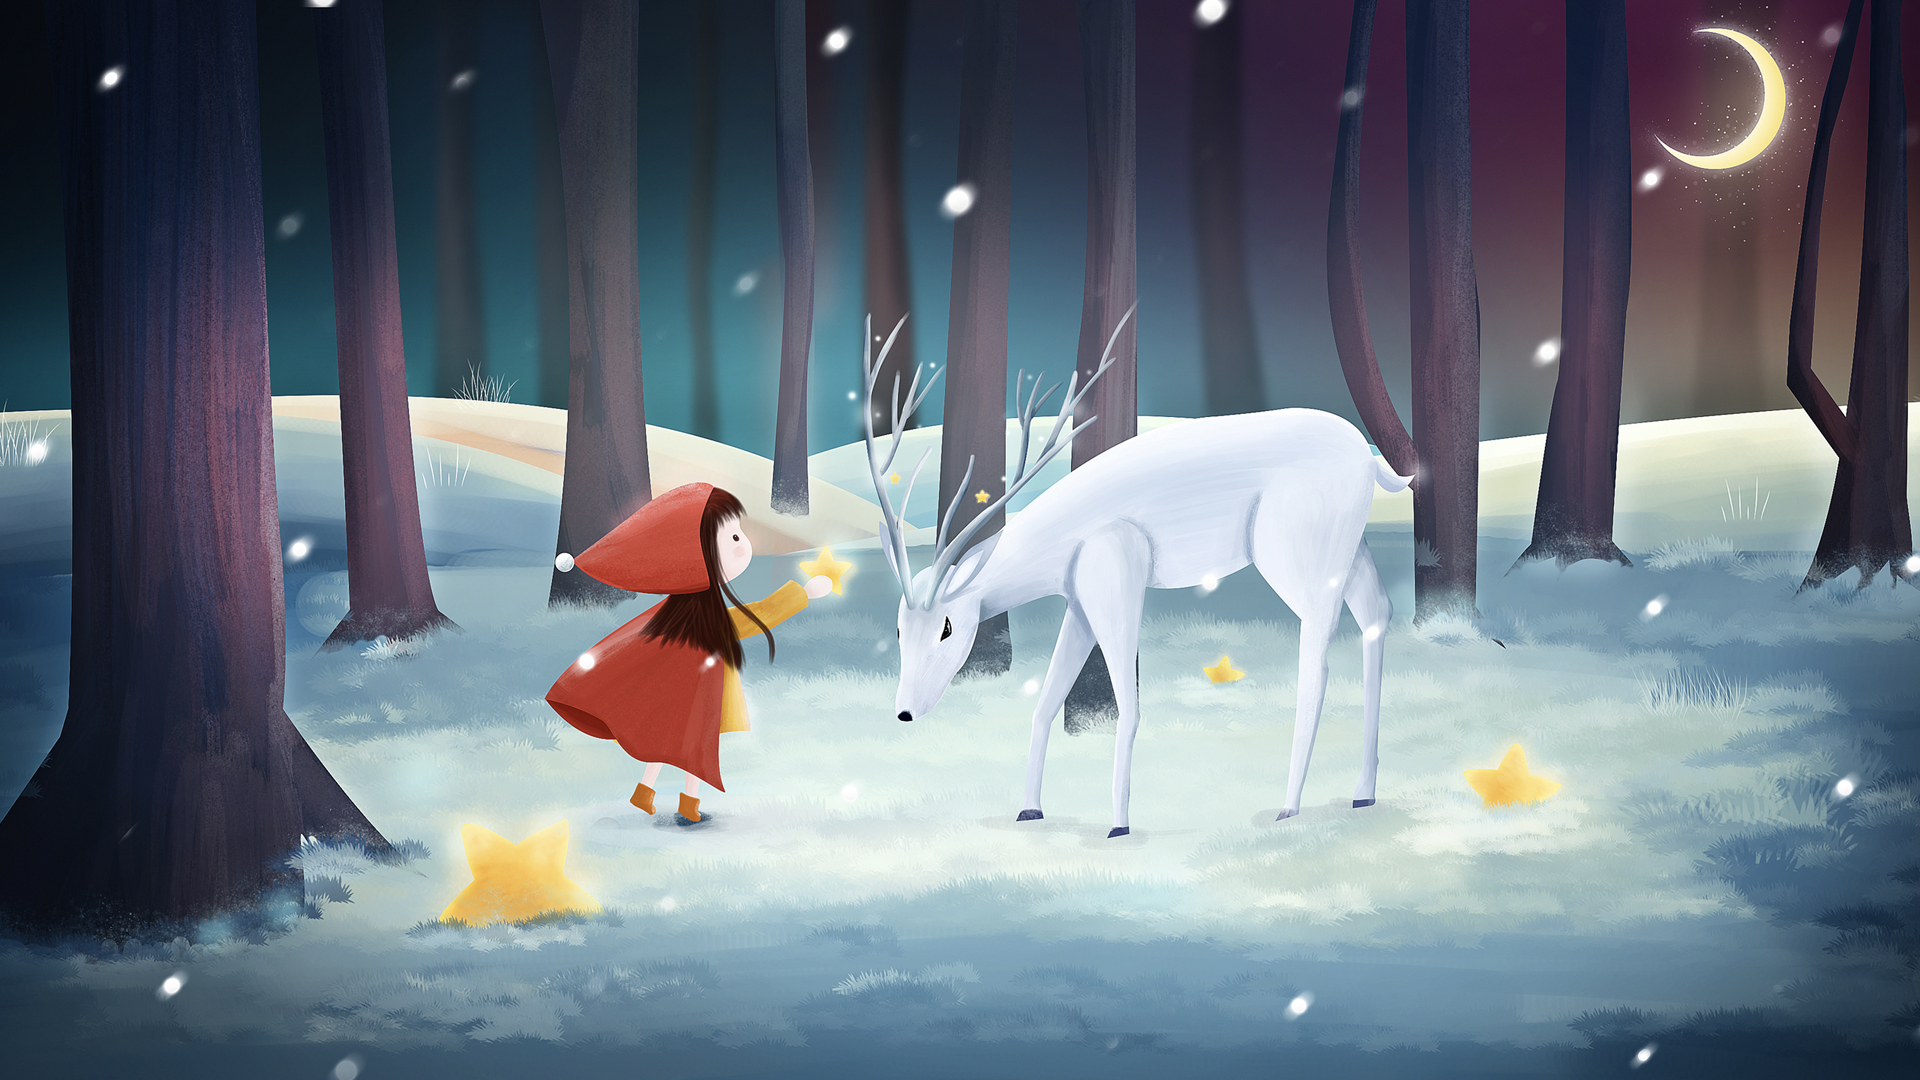 平安夜 圣诞节 森林 雪地里给鹿送礼物的小女孩壁纸